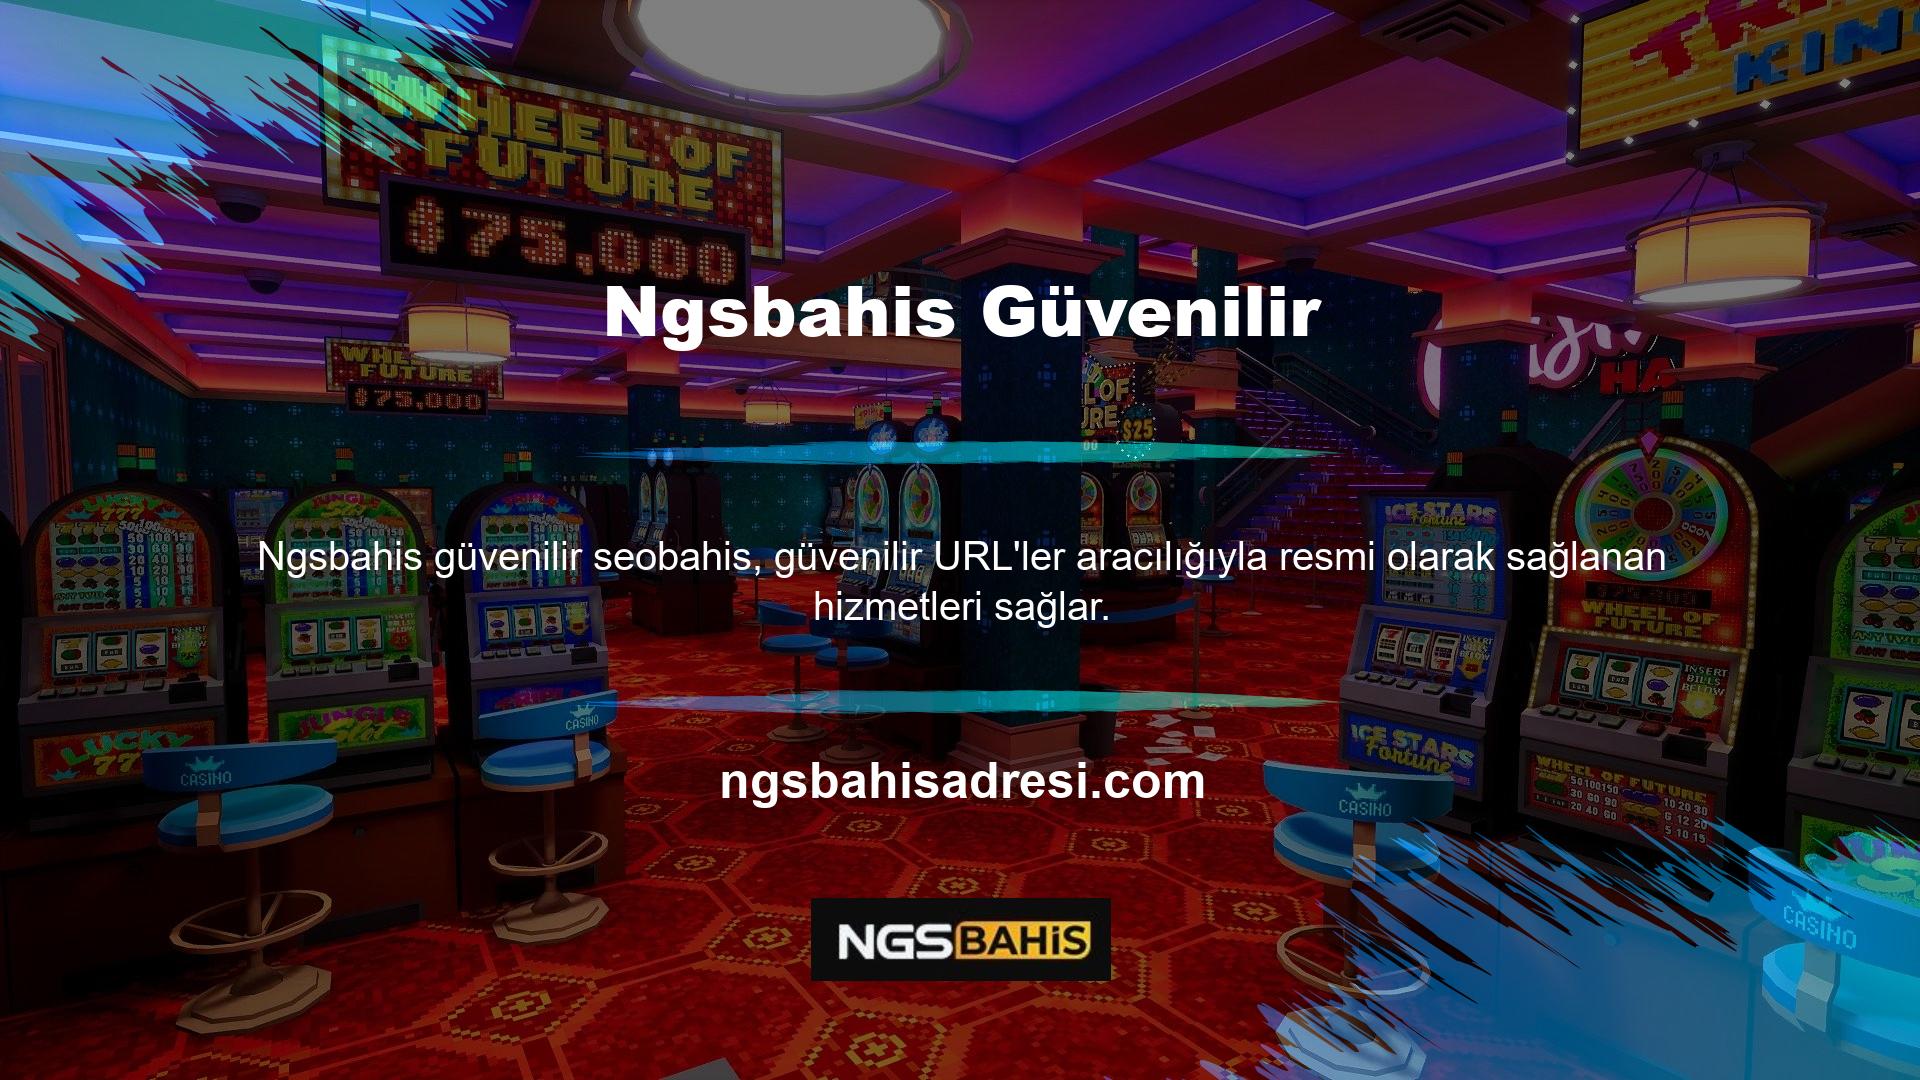 Aynı zamanda Ngsbahis, tüm önlemlerin aşılmasına yardımcı olmak amacıyla özellikle Türk kullanıcılar için düzenli olarak güncellenen bir giriş adresi sistemi sunmaktadır